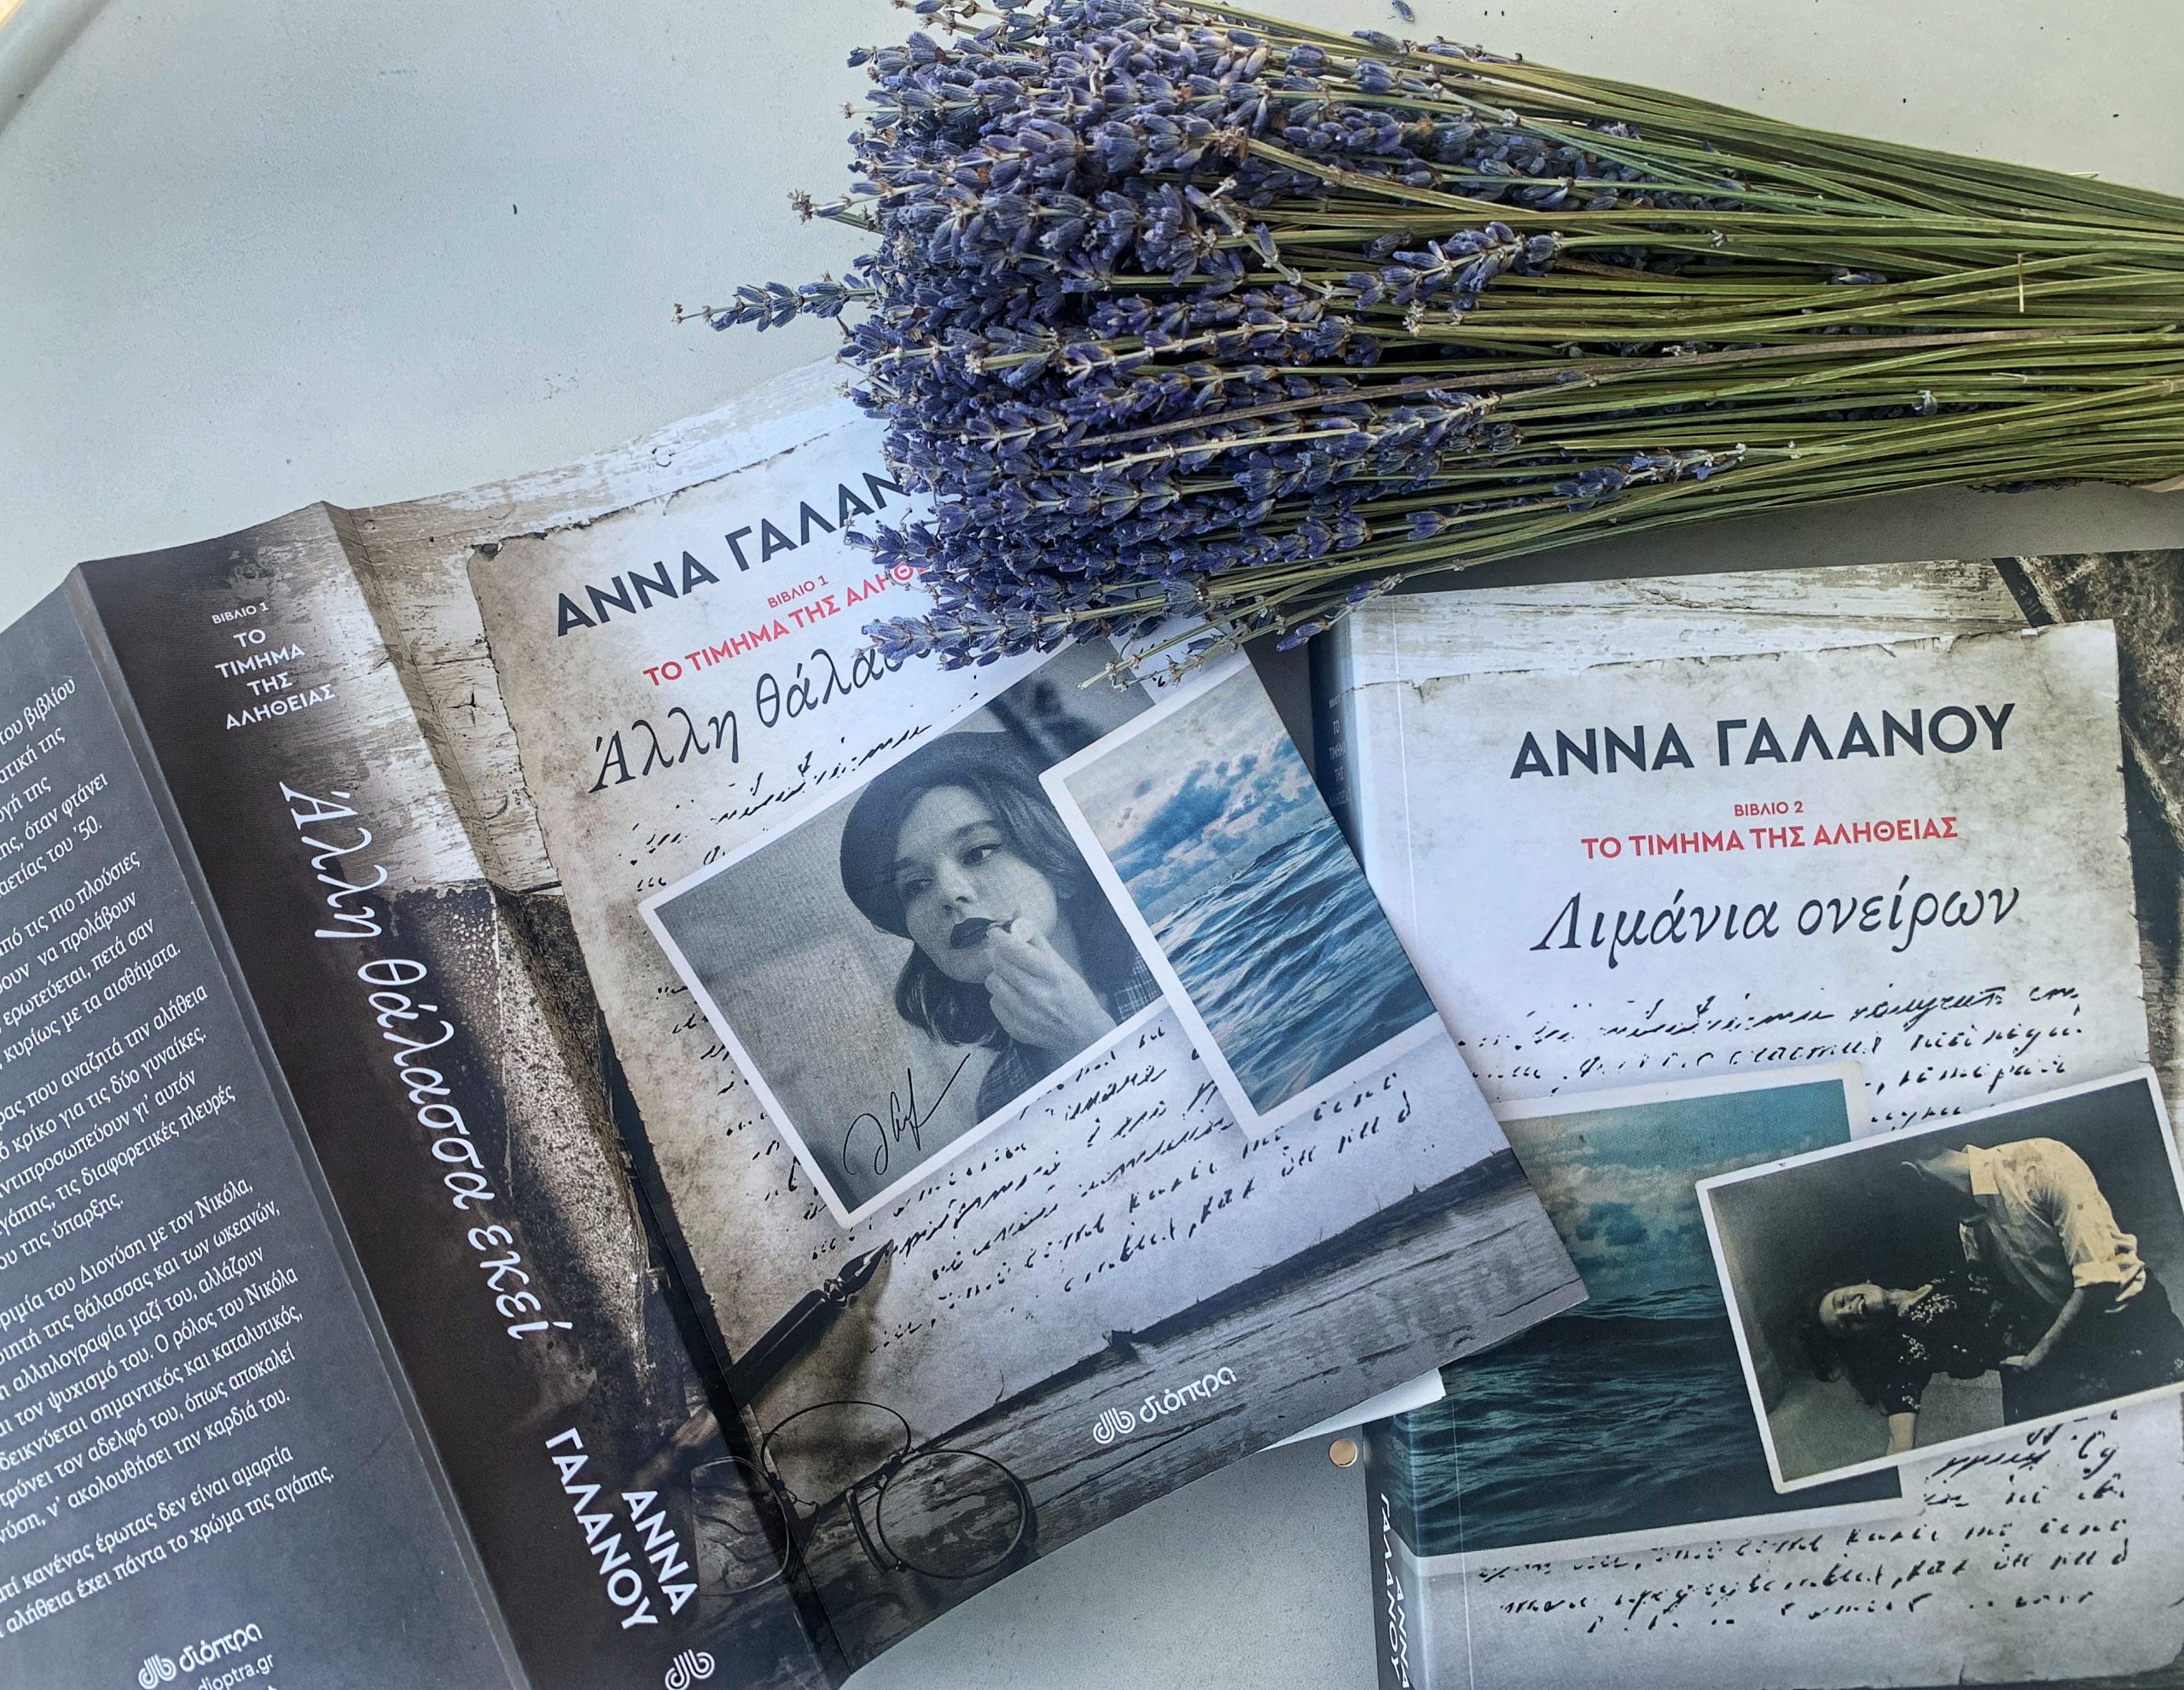 Καλοκαίρι και βιβλία: Η συγκλονιστική διλογία της Άννας Γαλανού που θα έρθει μαζί μας στις διακοπές